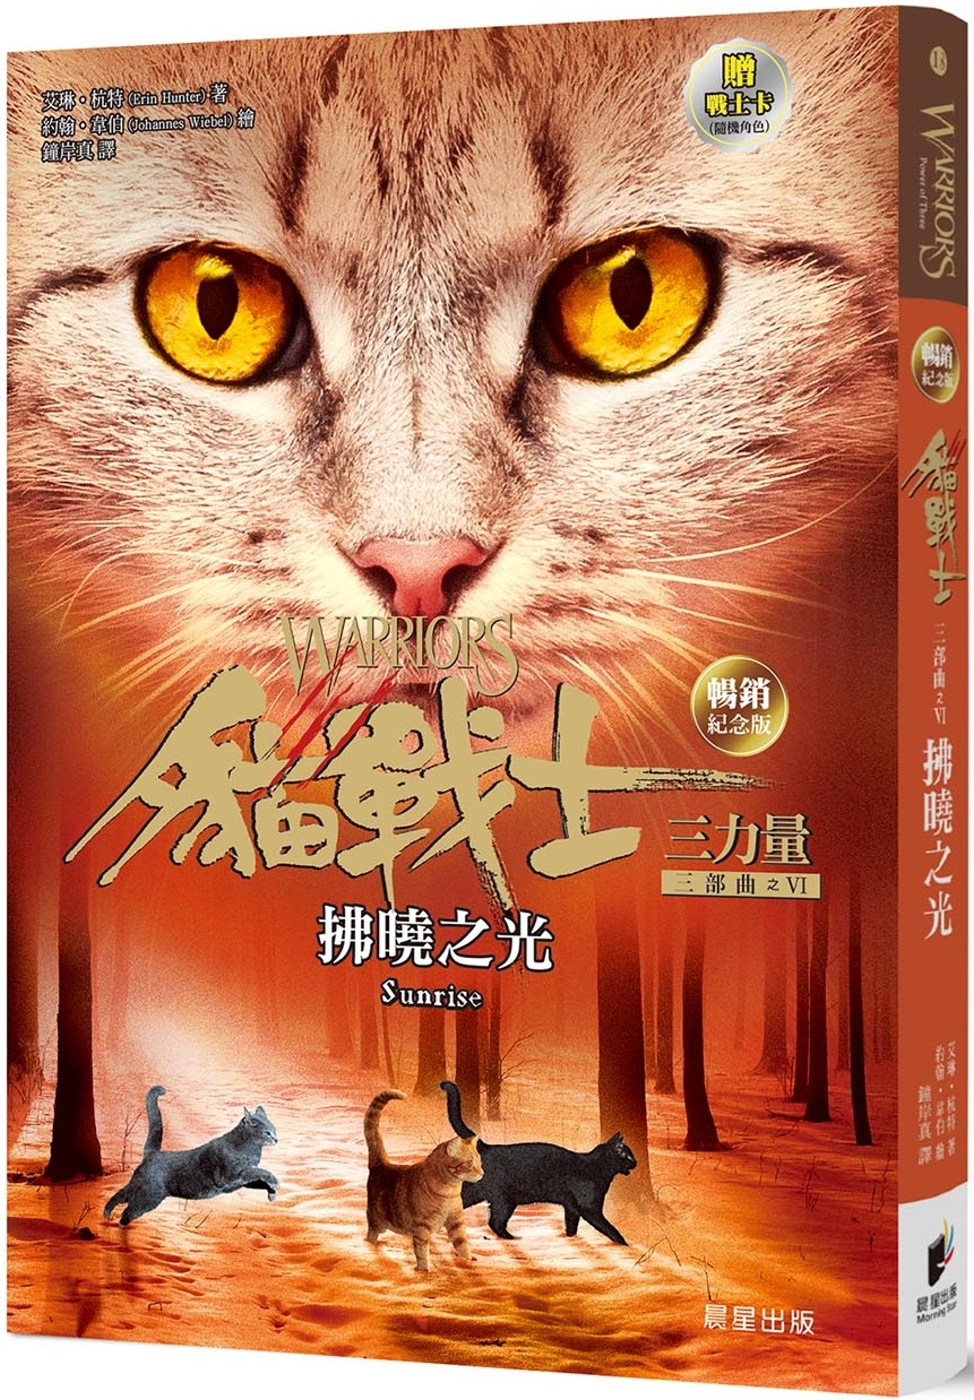 貓戰士暢銷紀念版三部曲三力量之六...